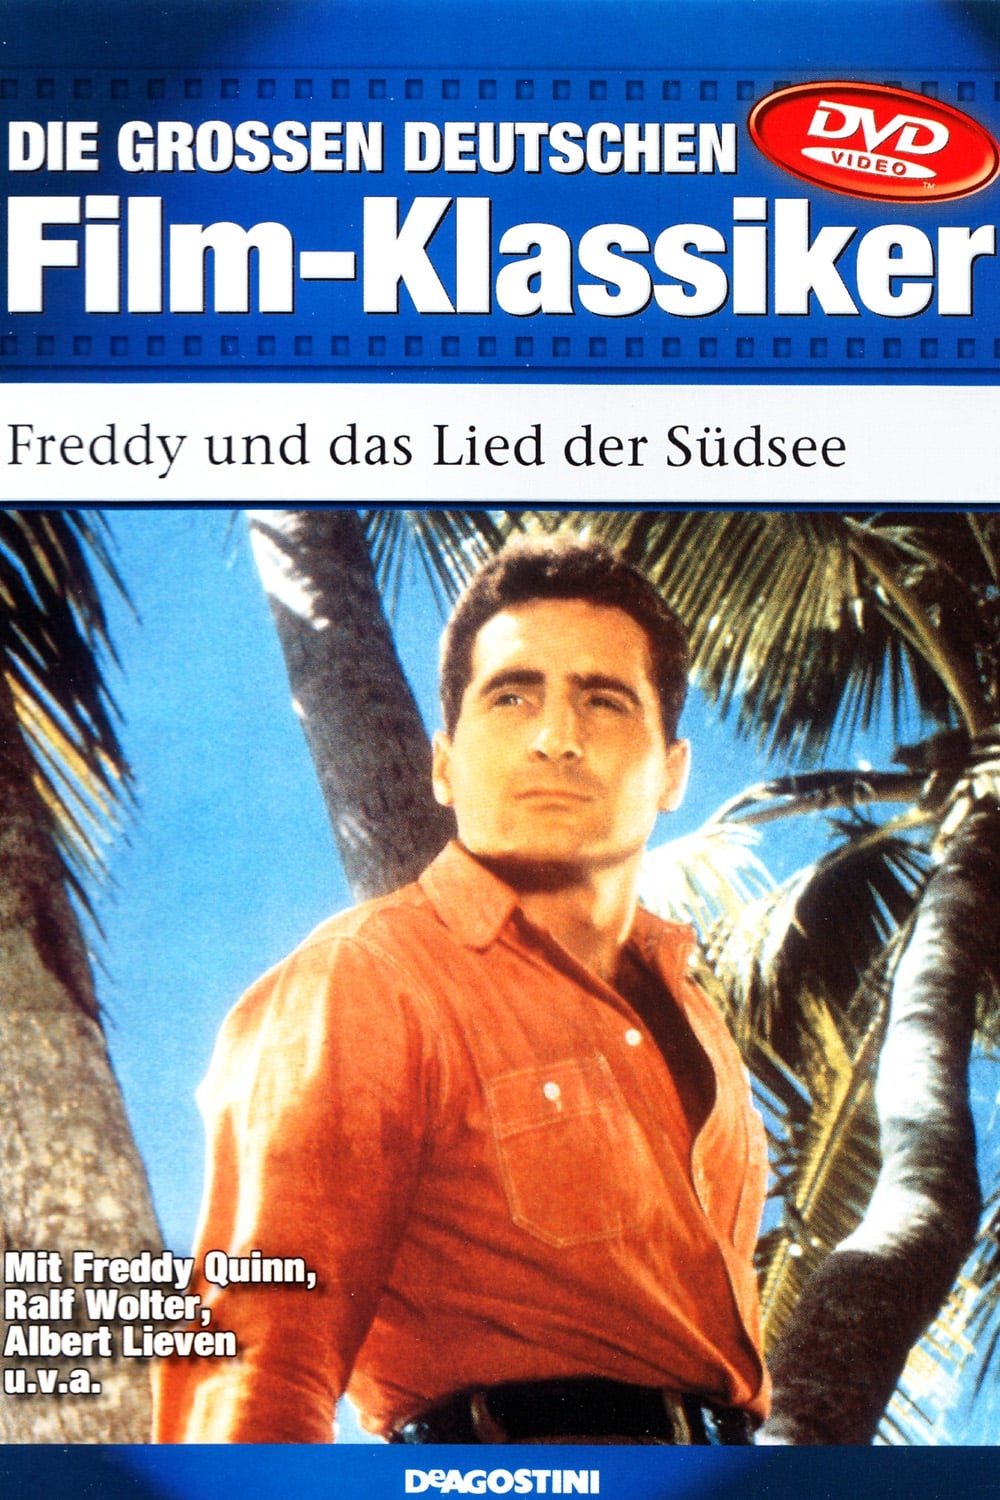 Freddy und das Lied der Südsee (1963)